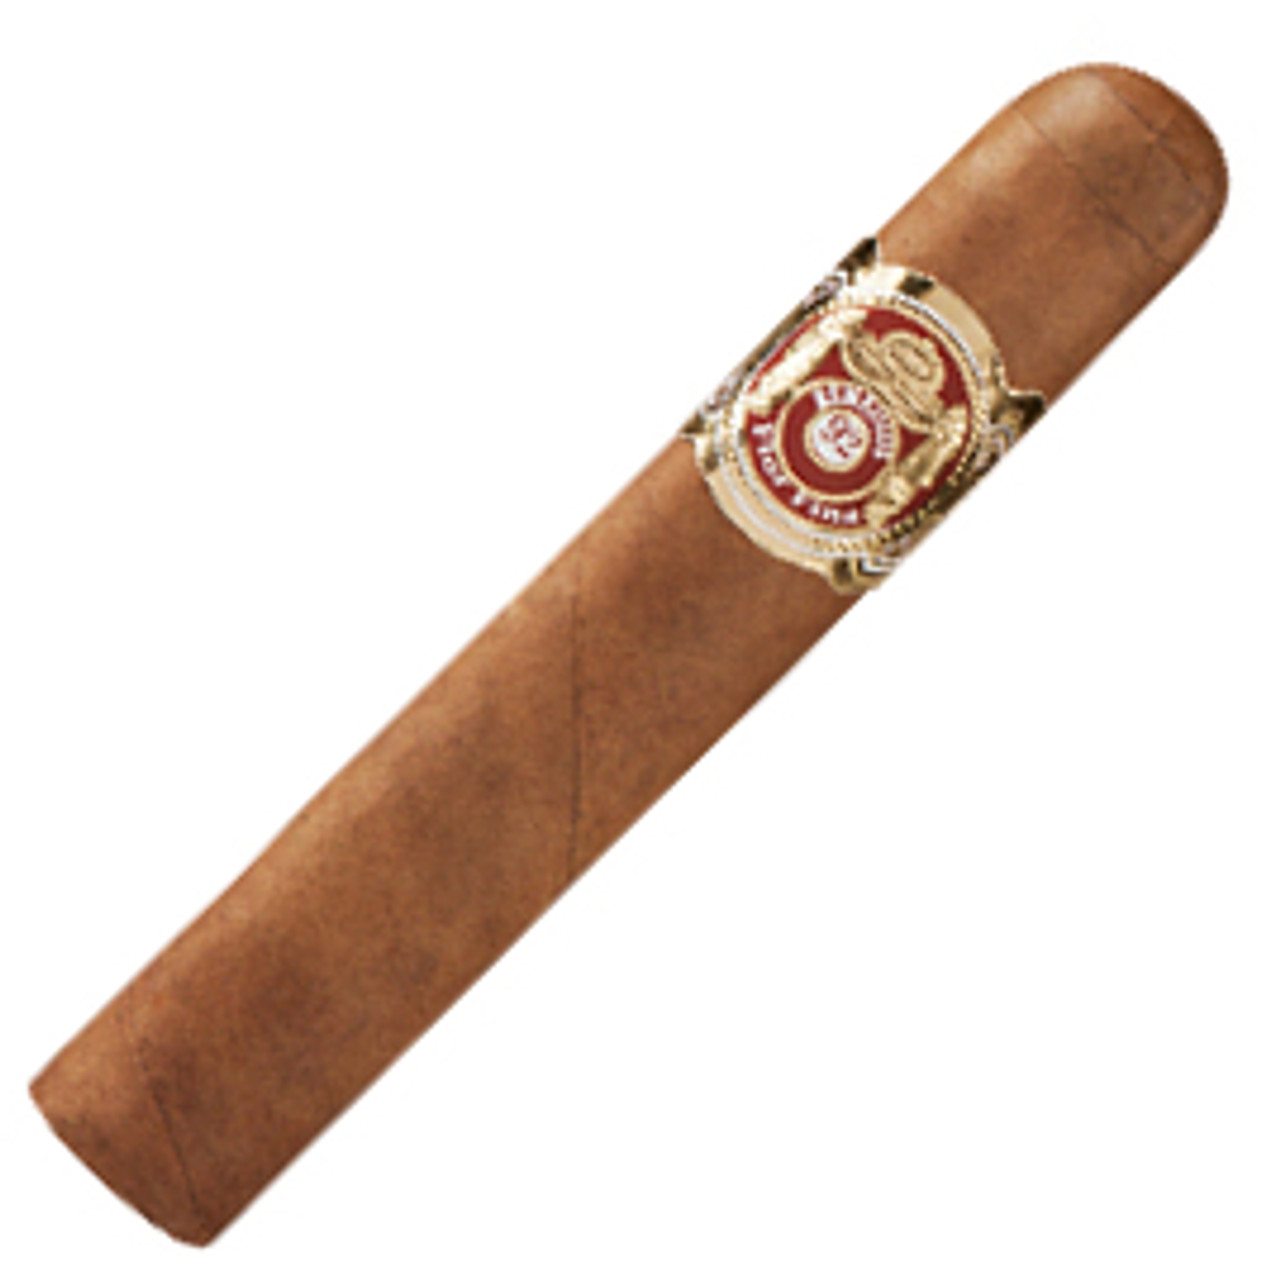 Remedios Robusto Bundle Cigars - 4.5 x 50 (Bundle of 20)